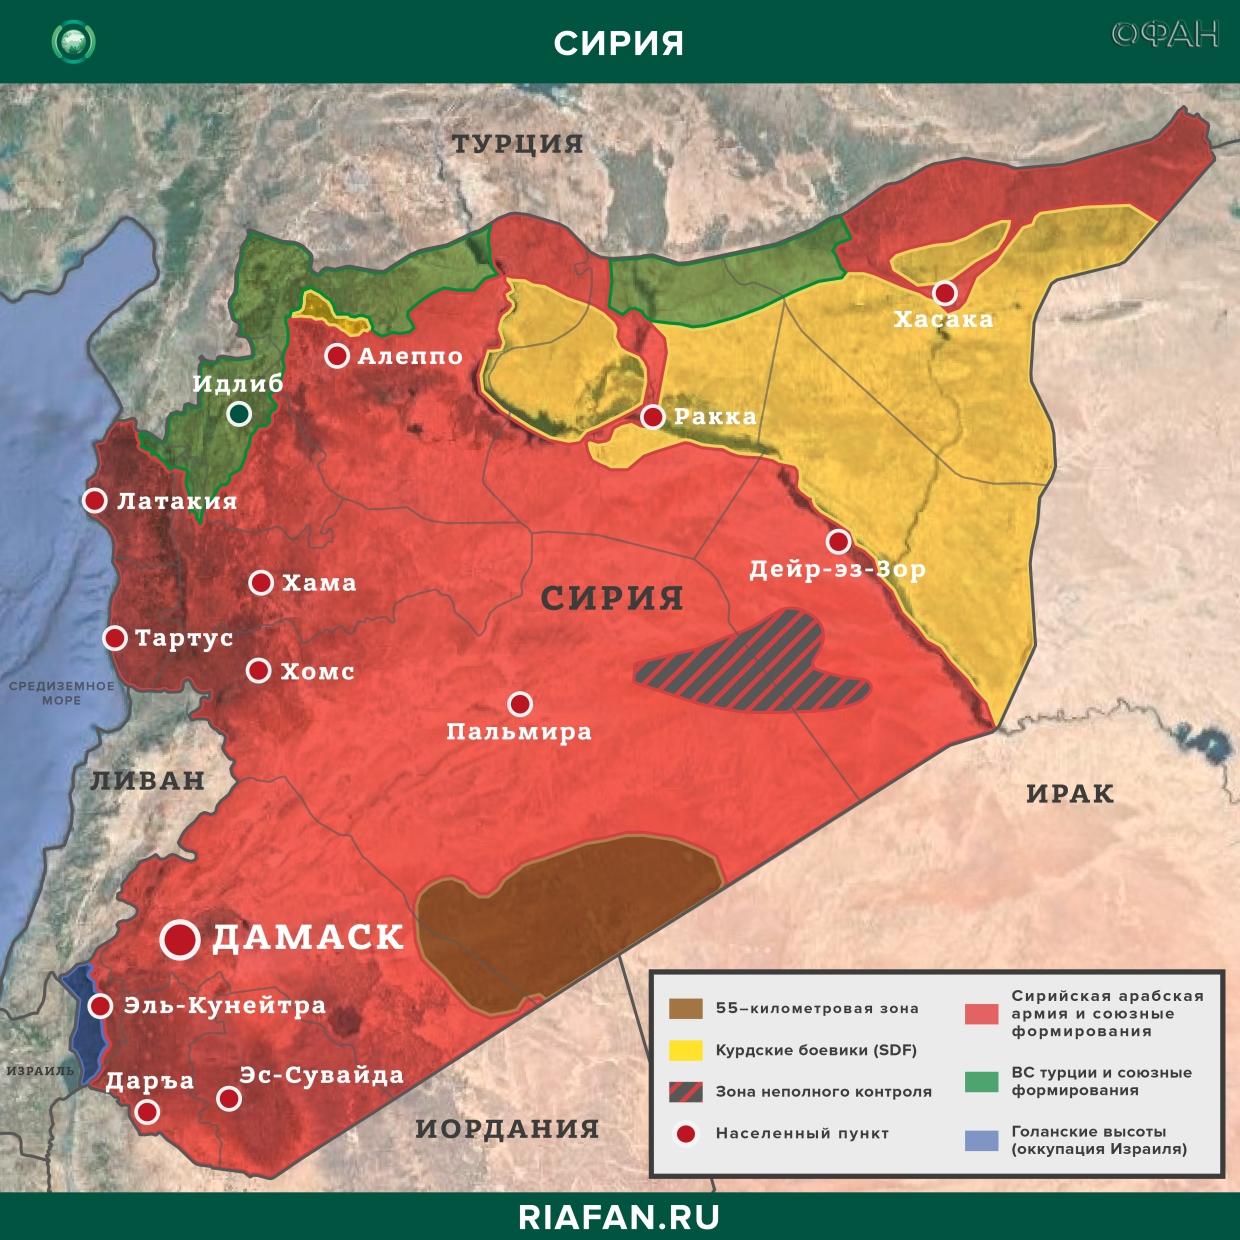 Сирия новости 1 марта 19.30: сирийские системы ПВО будут сбивать все вражеские цели над Идлибом, провокации боевиков в Даръа